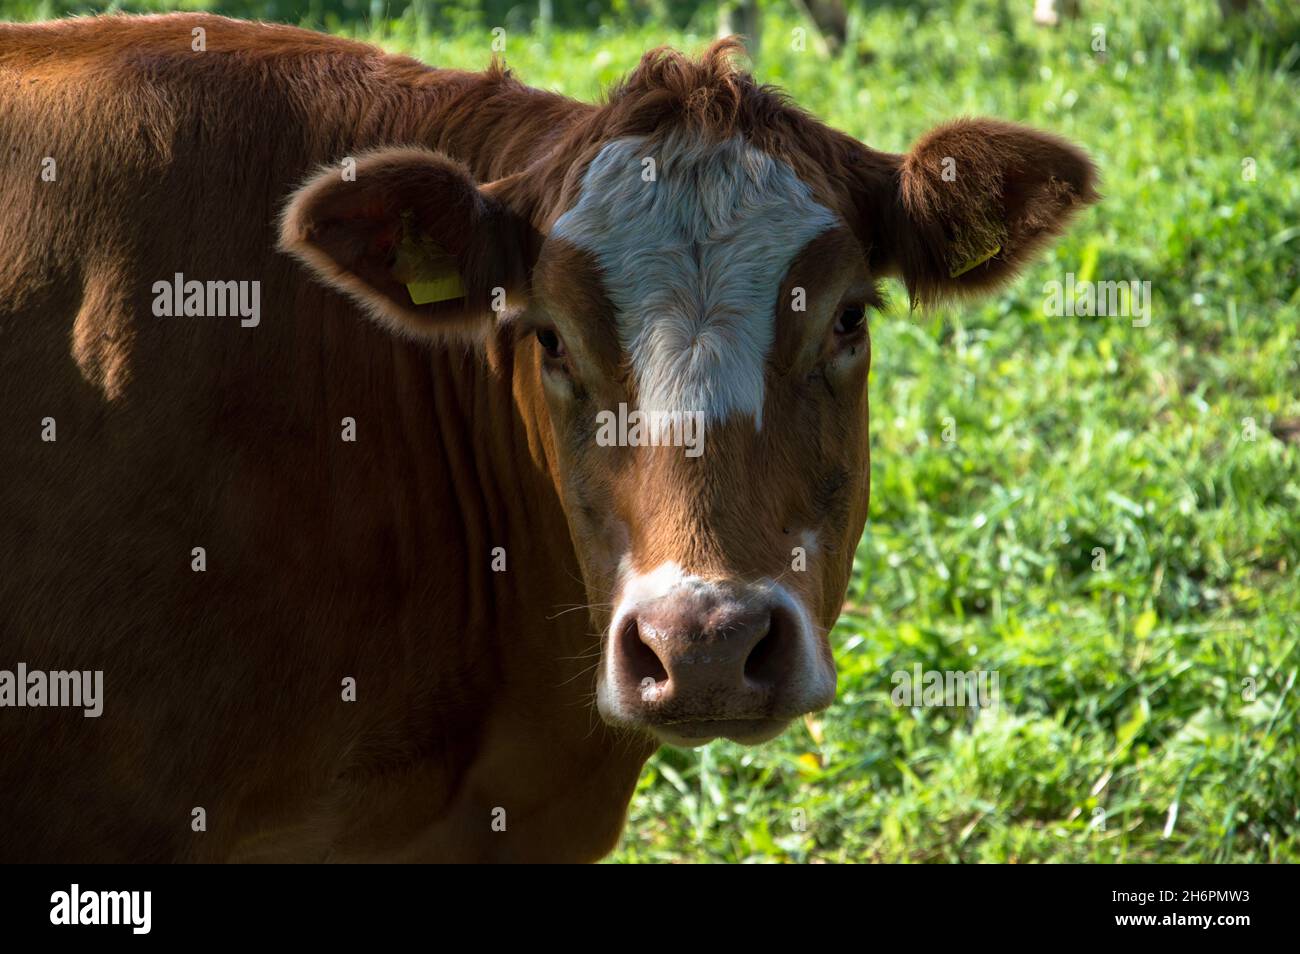 Kühe, Rinder und Kälber auf der Weide Stock Photo